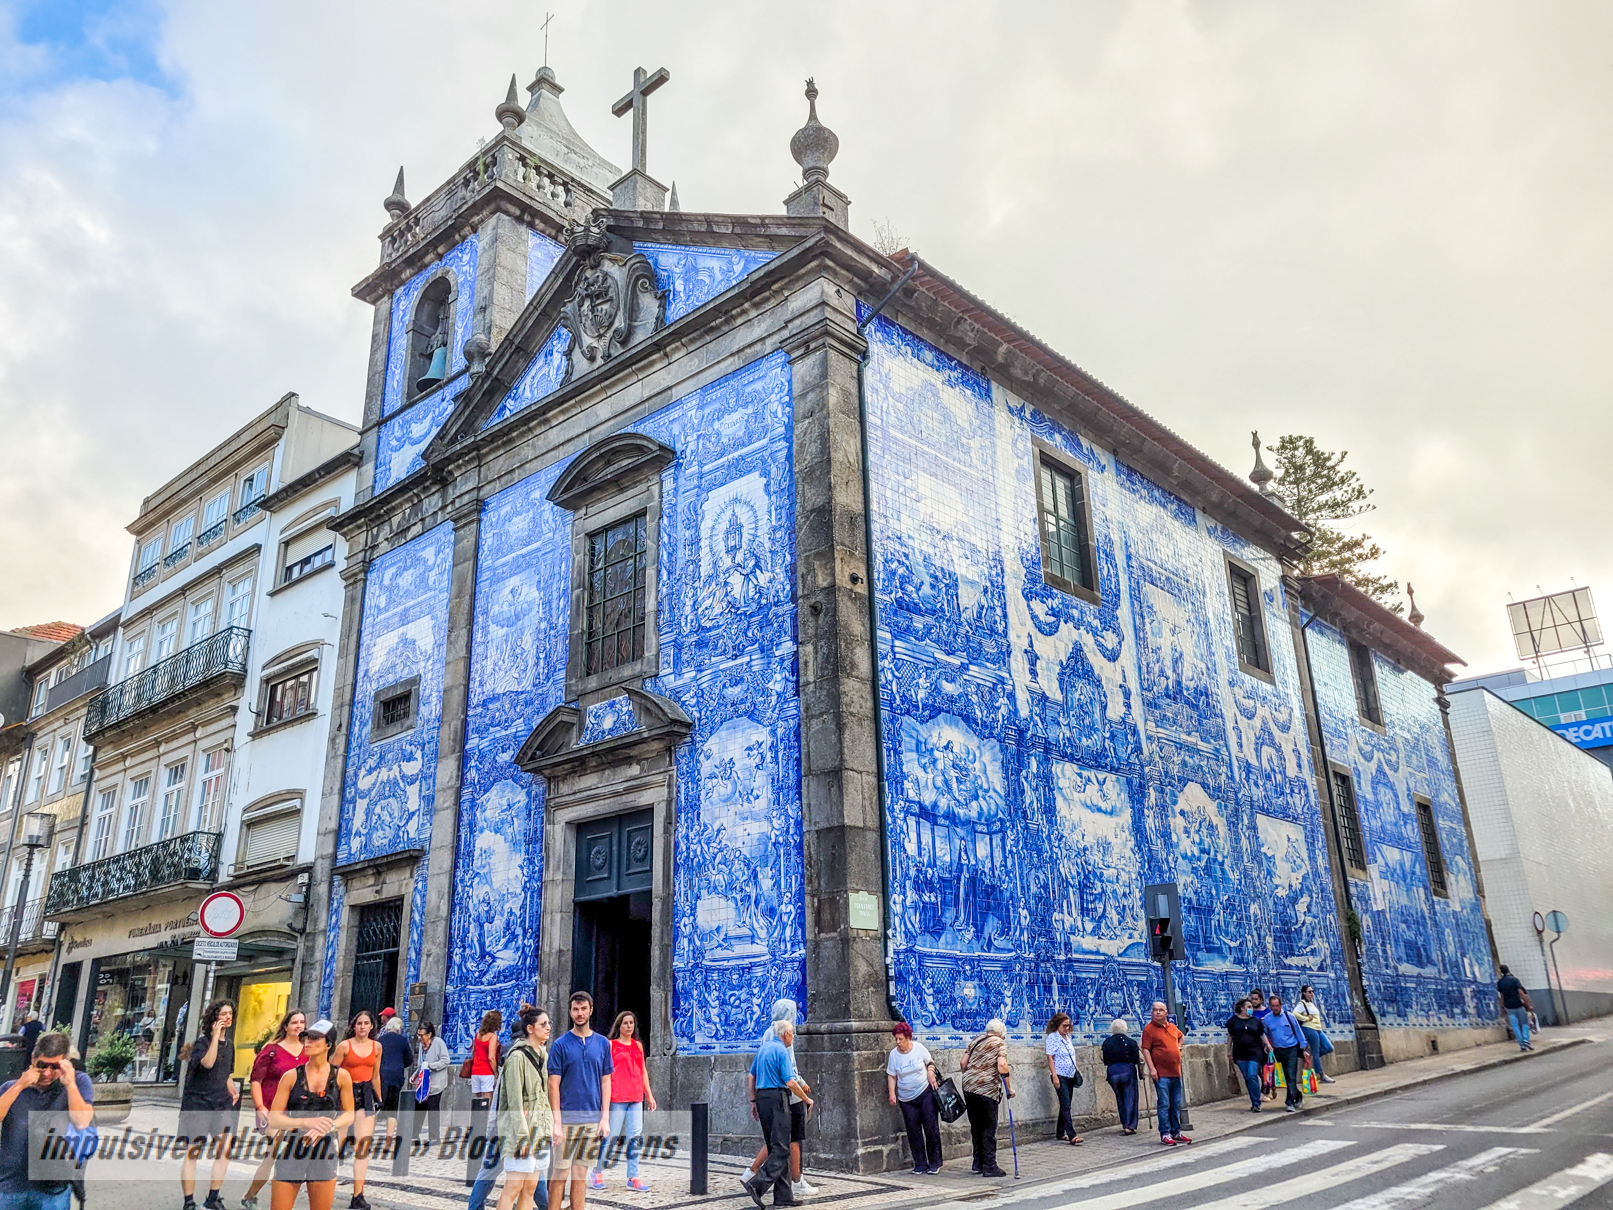 Chapel of Souls in Porto